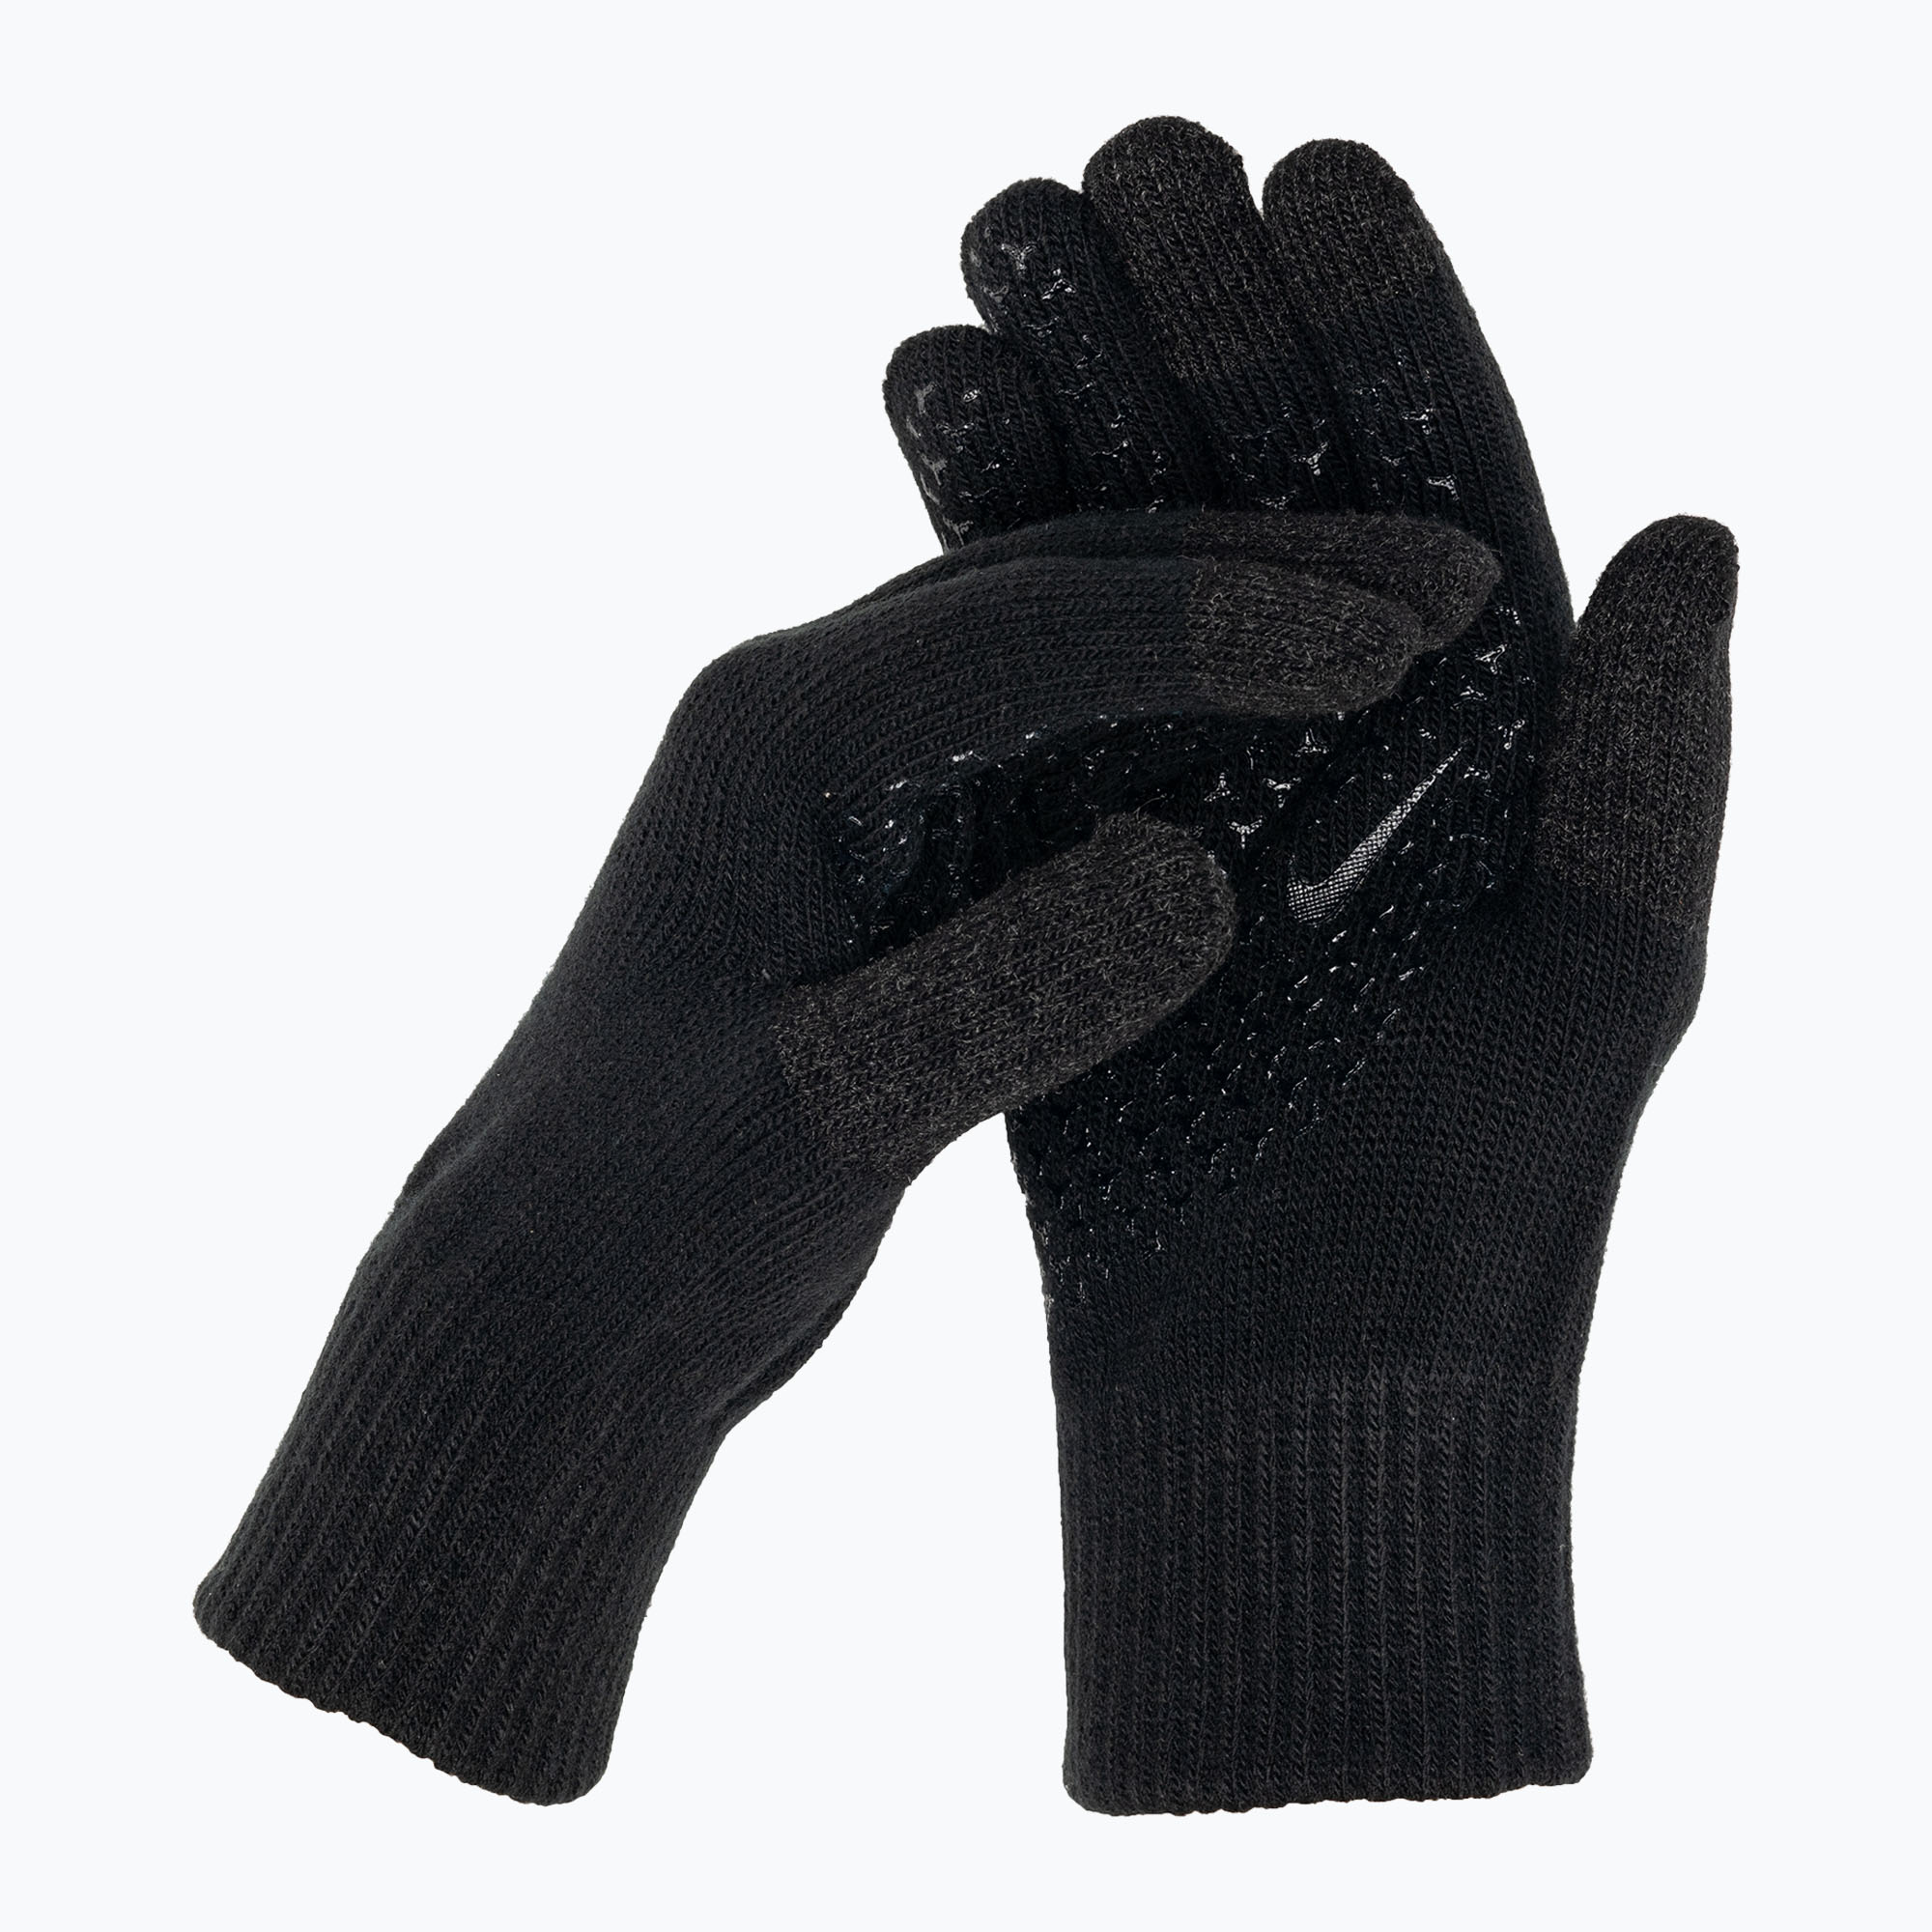 Zdjęcia - Rękawiczki Nike   Knit Tech and Grip TG 2.0 black/black/white | WYSYŁ 